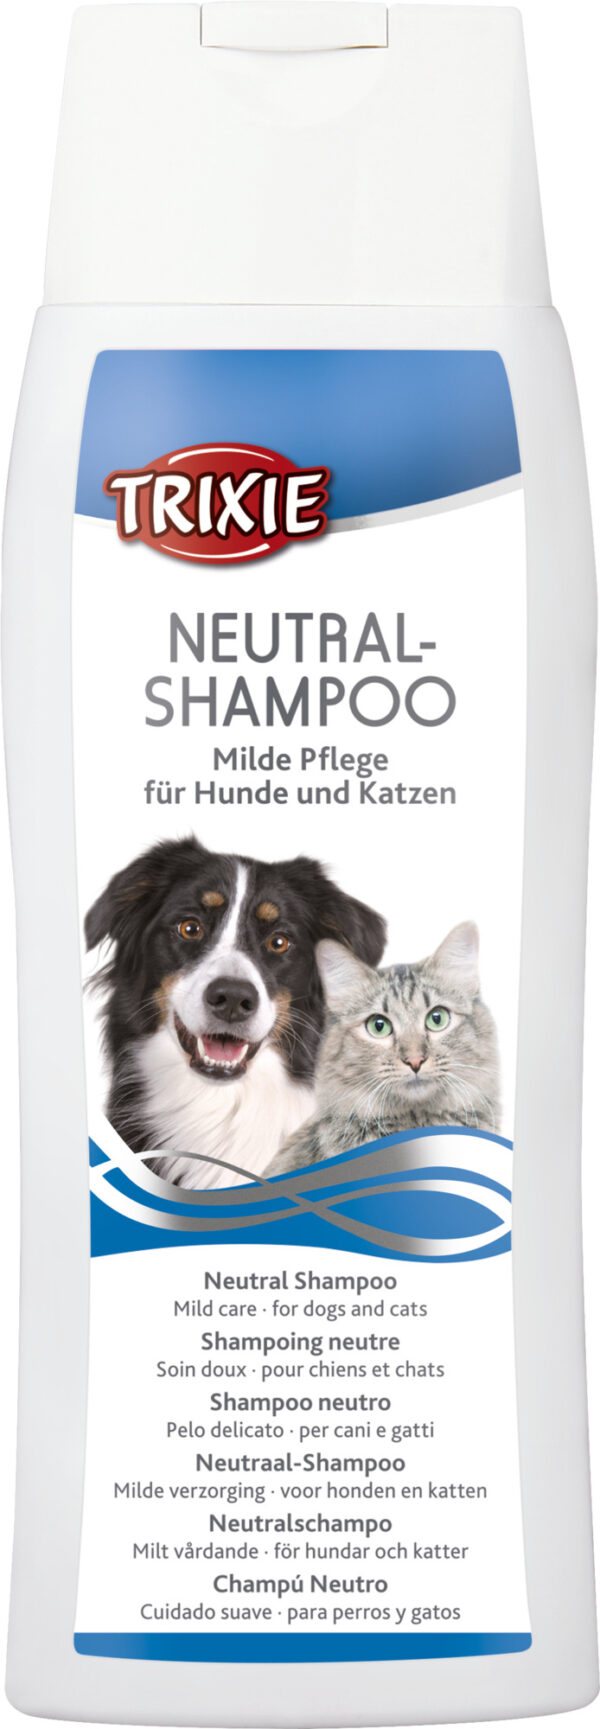 trixie-neutral-Shampoo